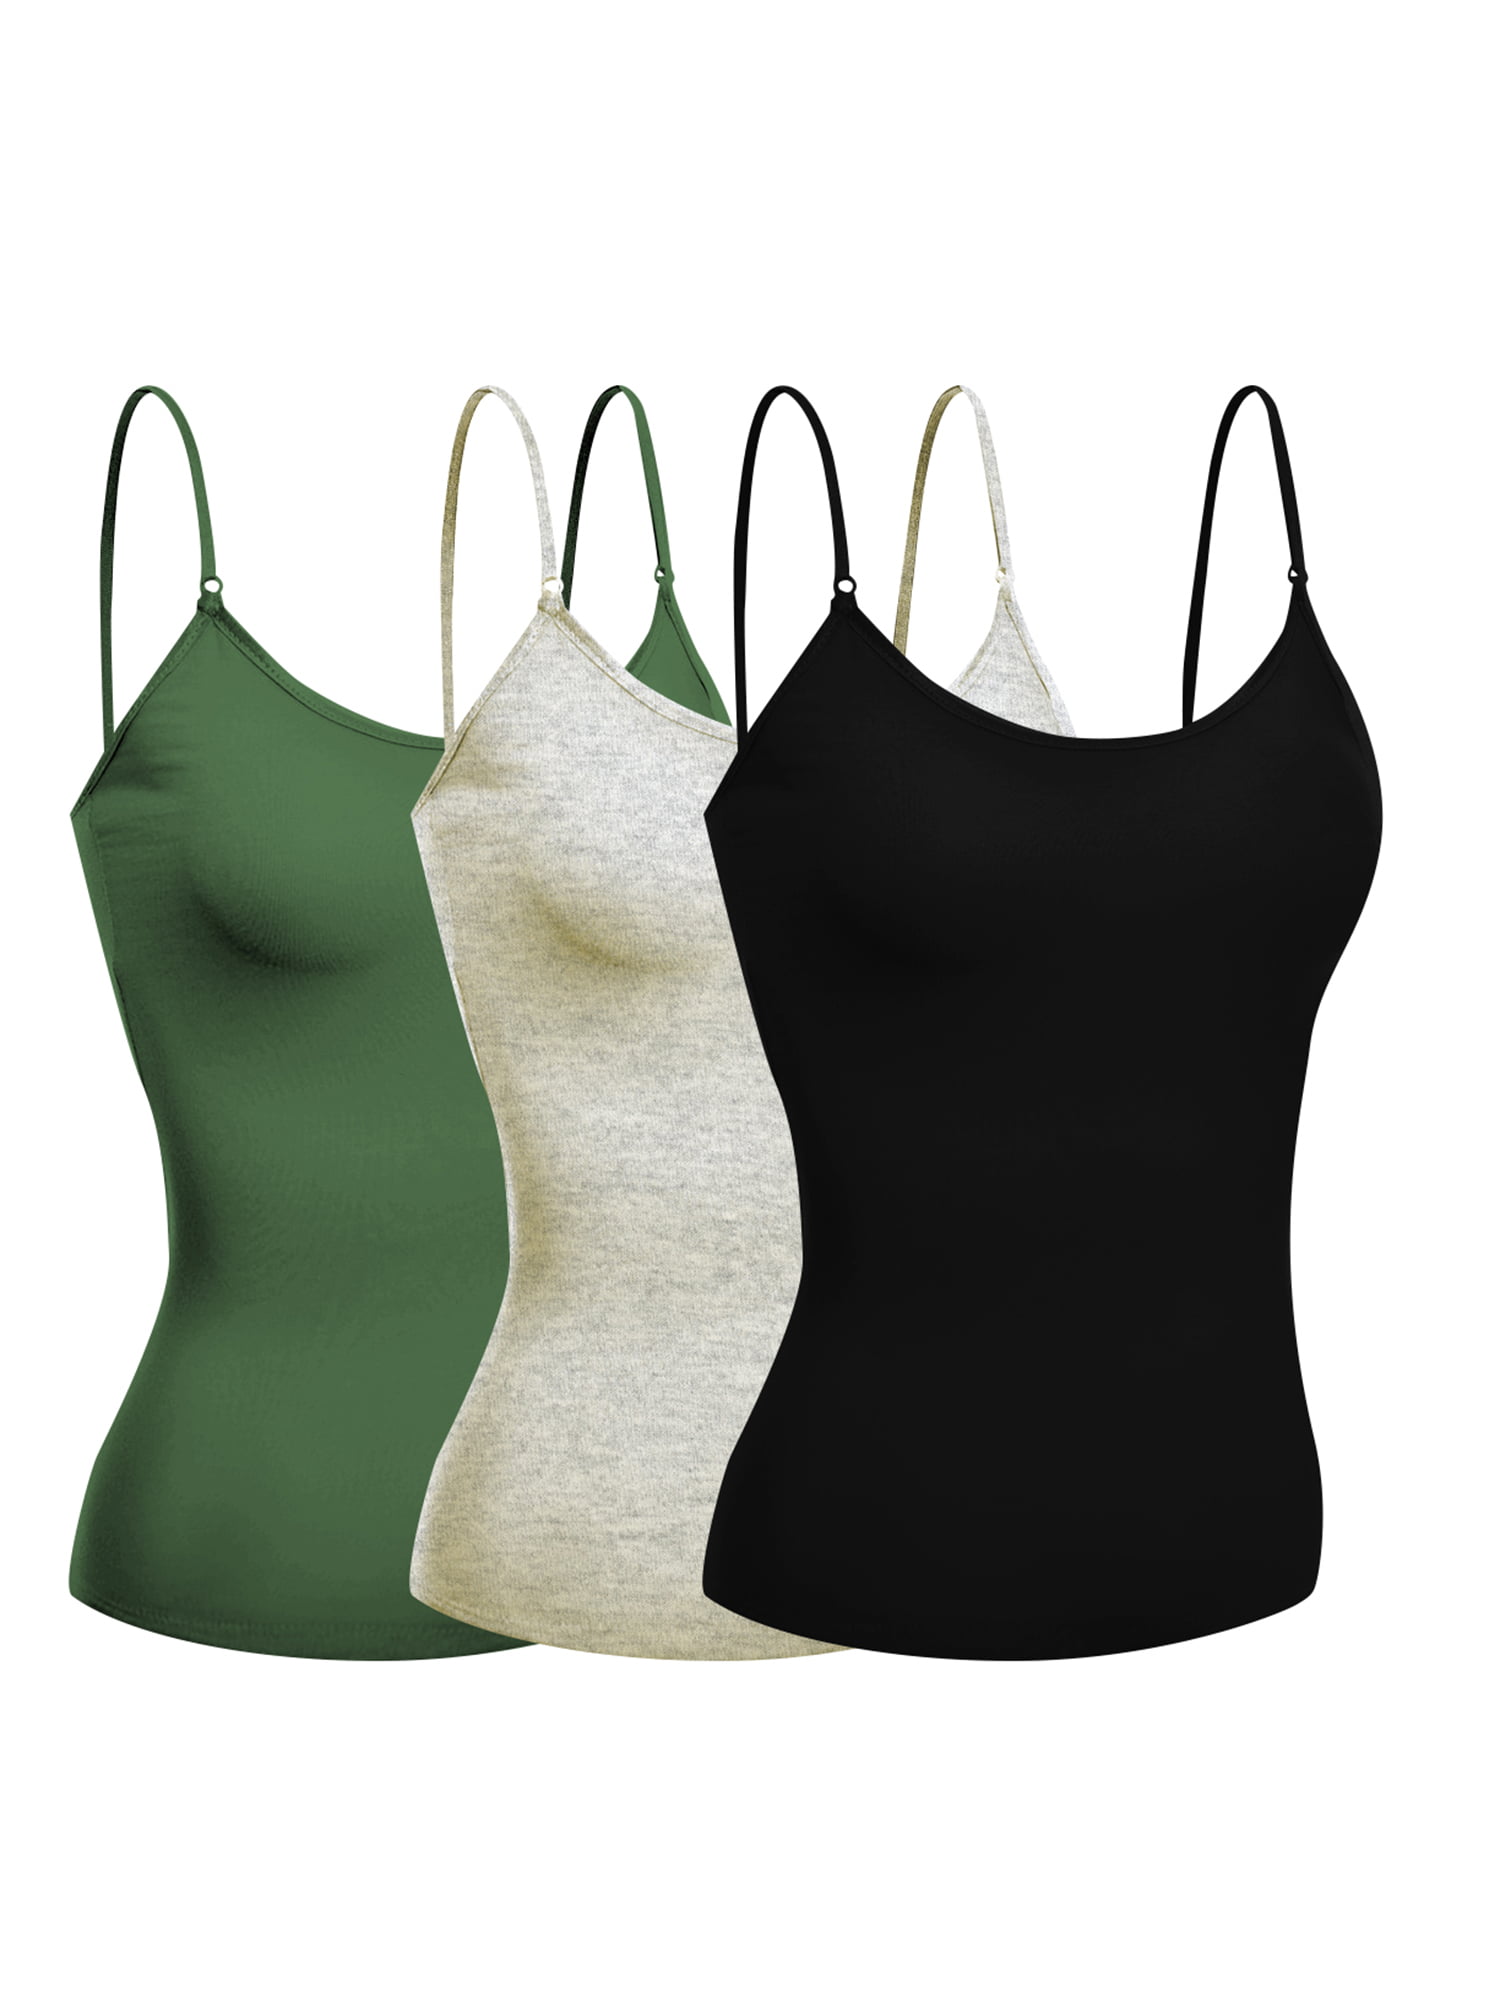 Emmalise - Emmalise Women's Camisole Built In Bra Wireless Fabric ...